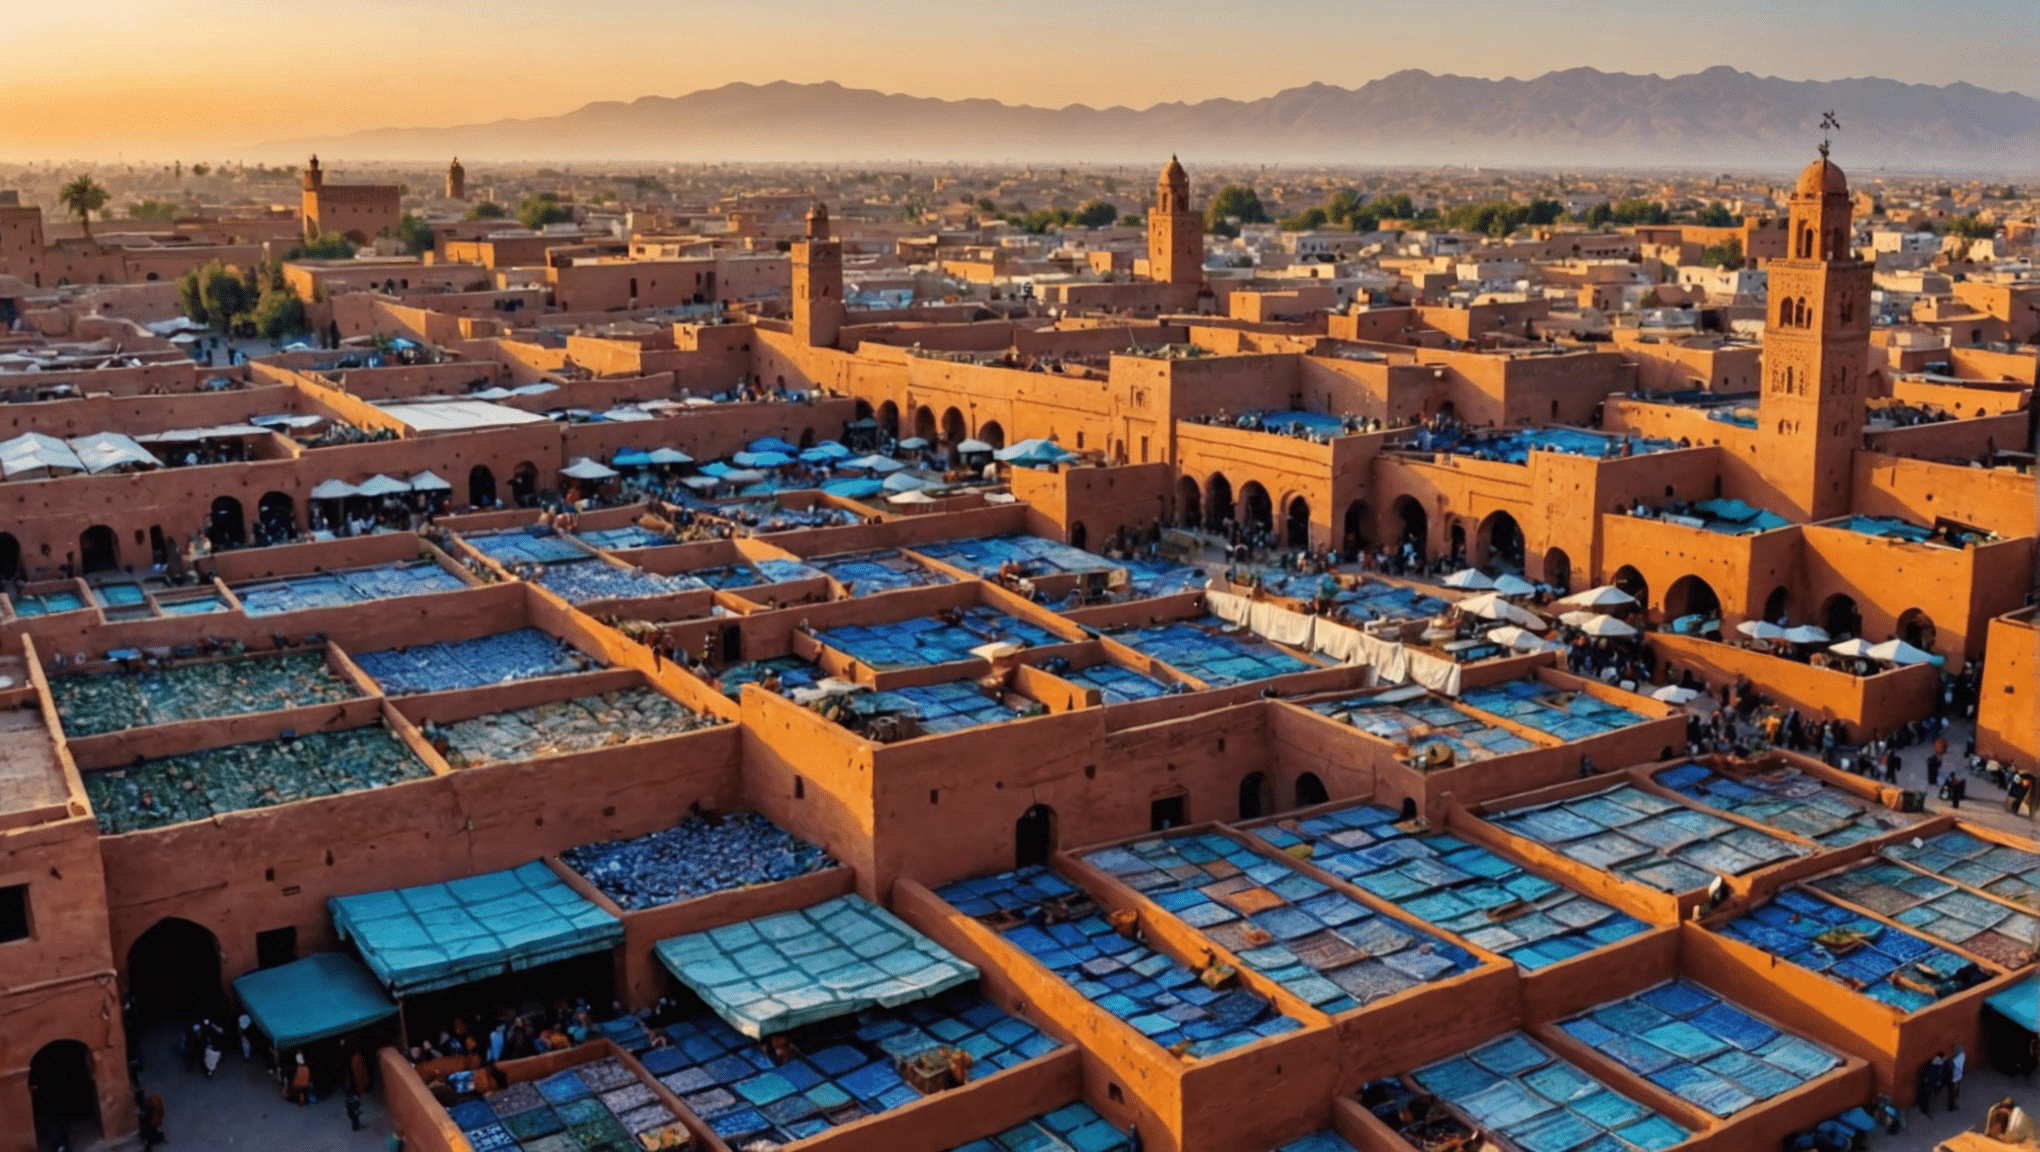 Descubra las 10 mejores actividades imprescindibles en Marrakech recomendadas por un experto local y aproveche al máximo su visita a esta vibrante ciudad.